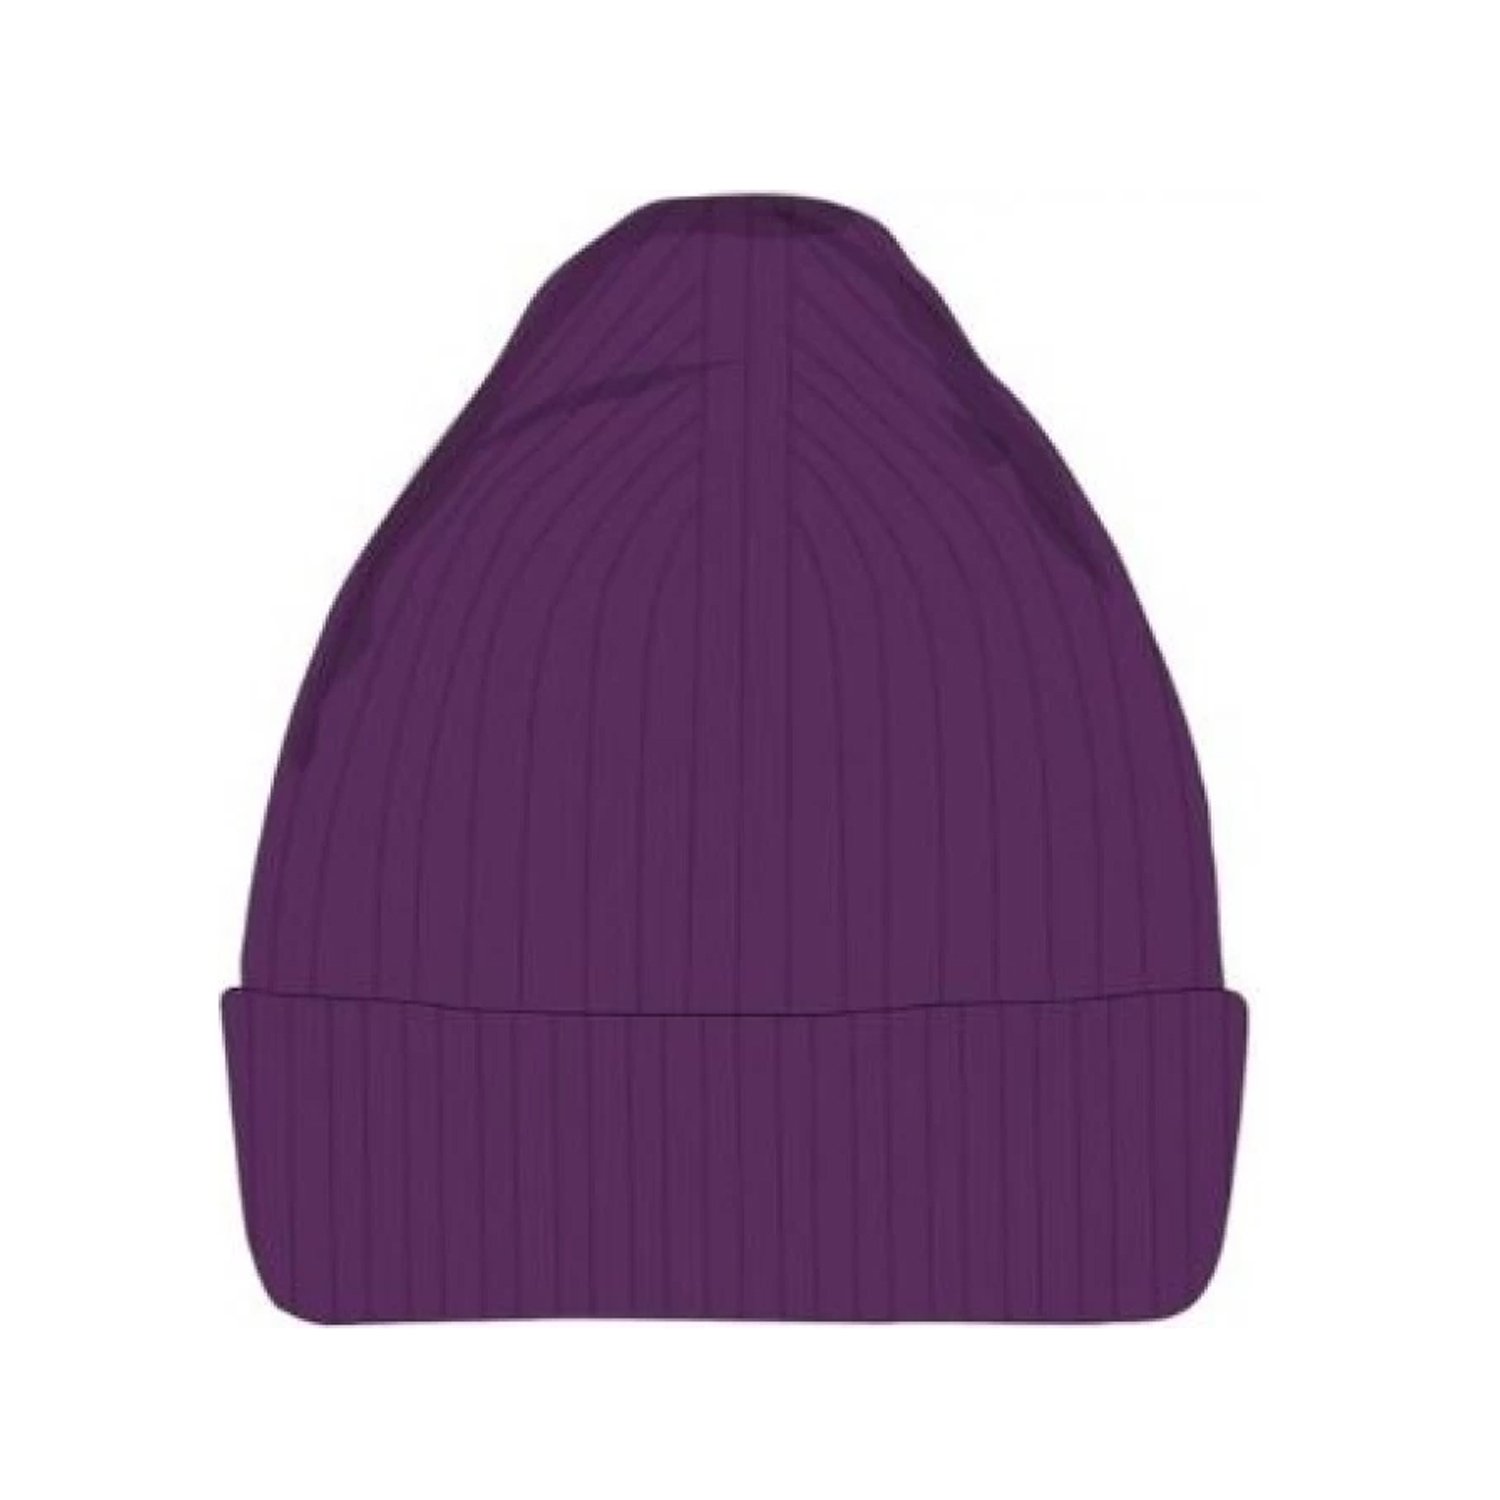 Шапка Buff Knitted & Fleece Band Hat Midy Midy Purple, US:one size, 132315.605.10.00 amig0819 ammo mig акриловый фильтр фиолетовый acrylic filter violet